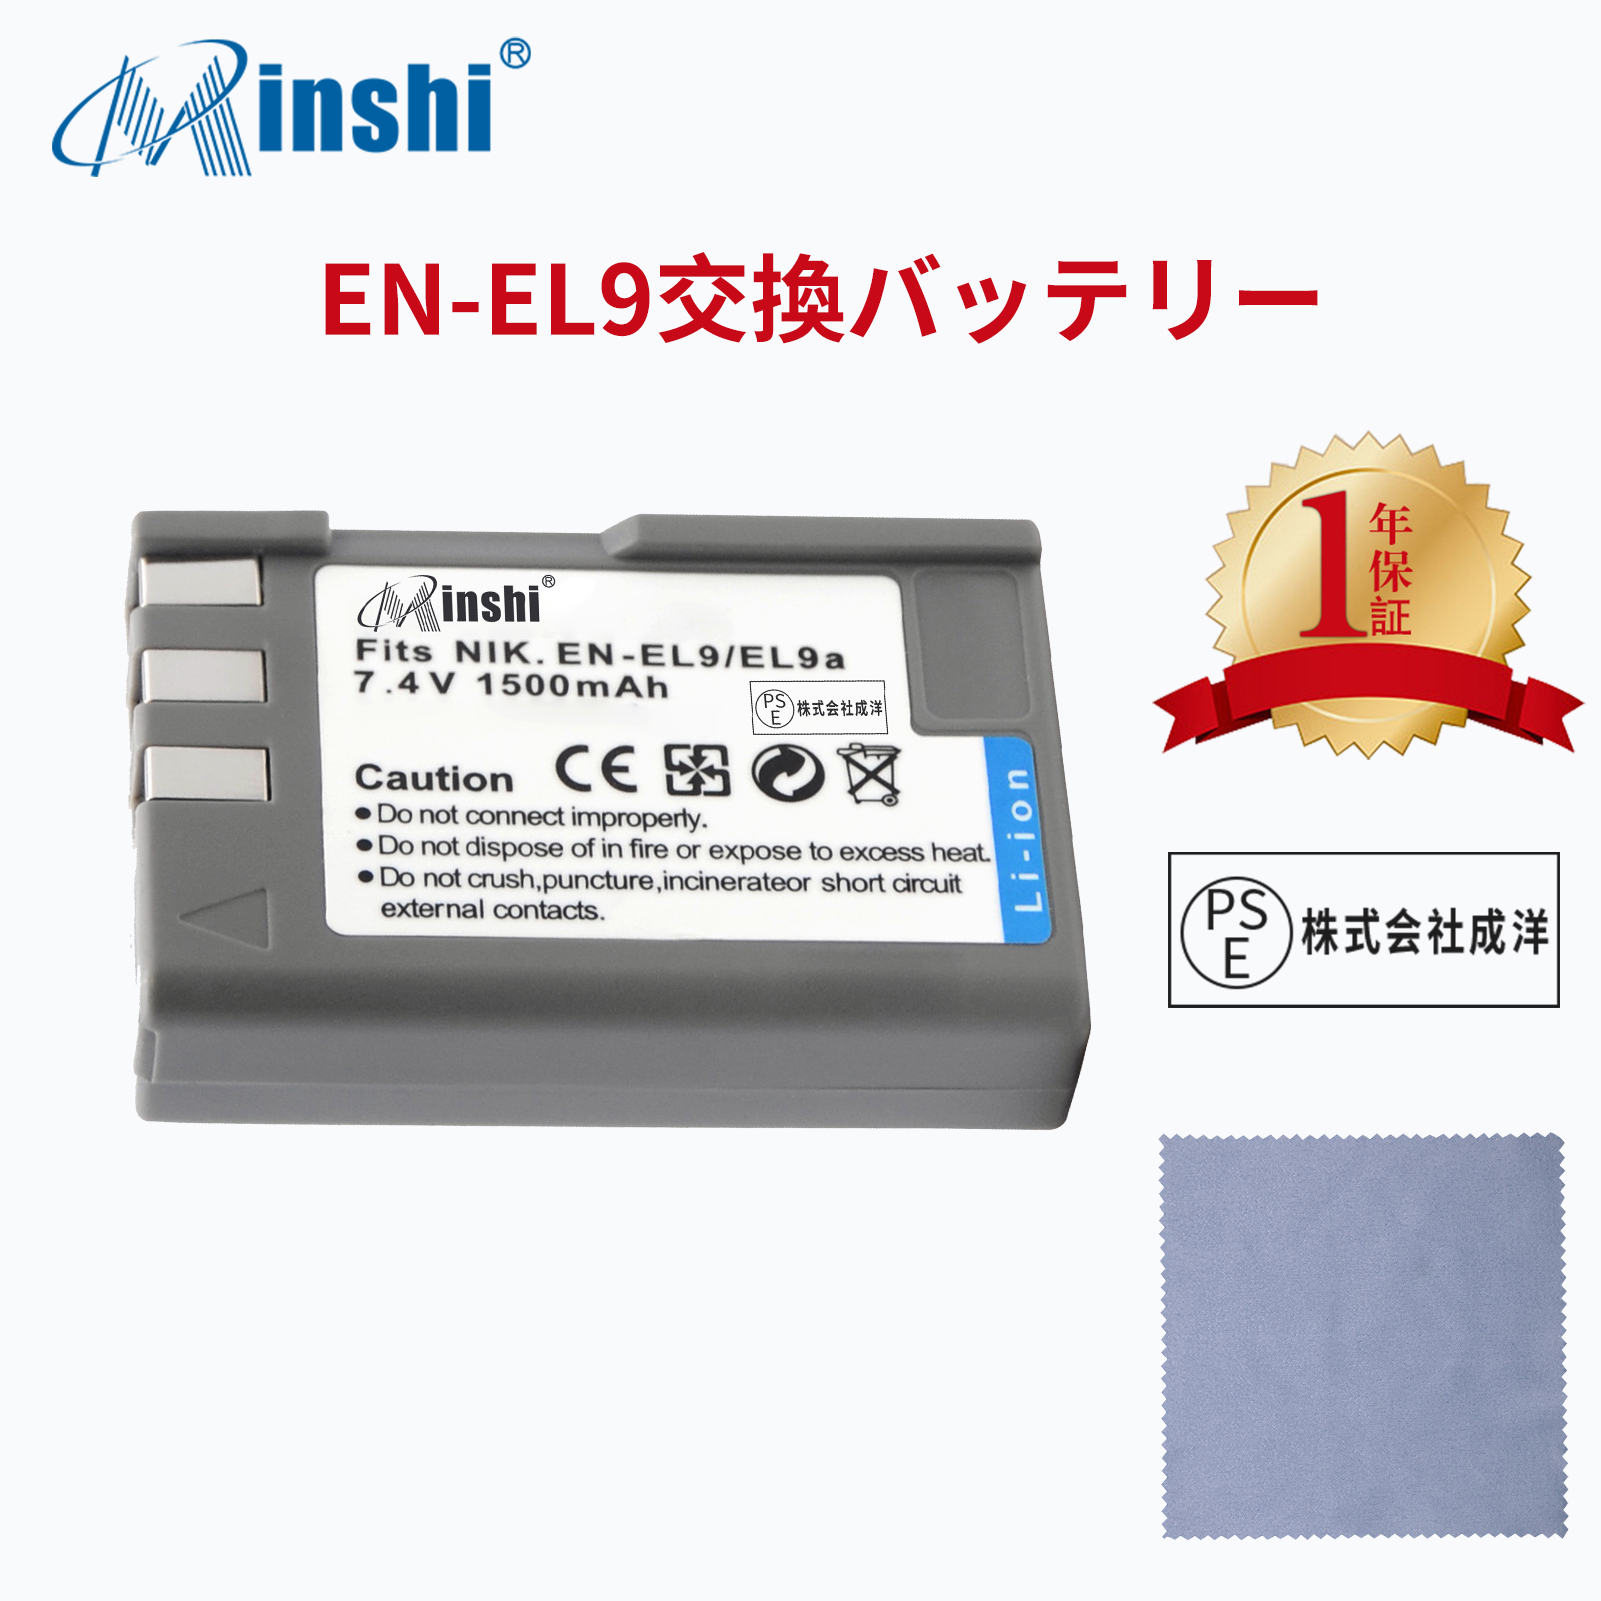 【クロス付き】 minshi NIKON D3000 EN-EL9a EN-EL9e 対応  1500mAh PSE認定済 高品質EN-EL9 EN-EL9a EN-EL9e互換バッテリーPHB